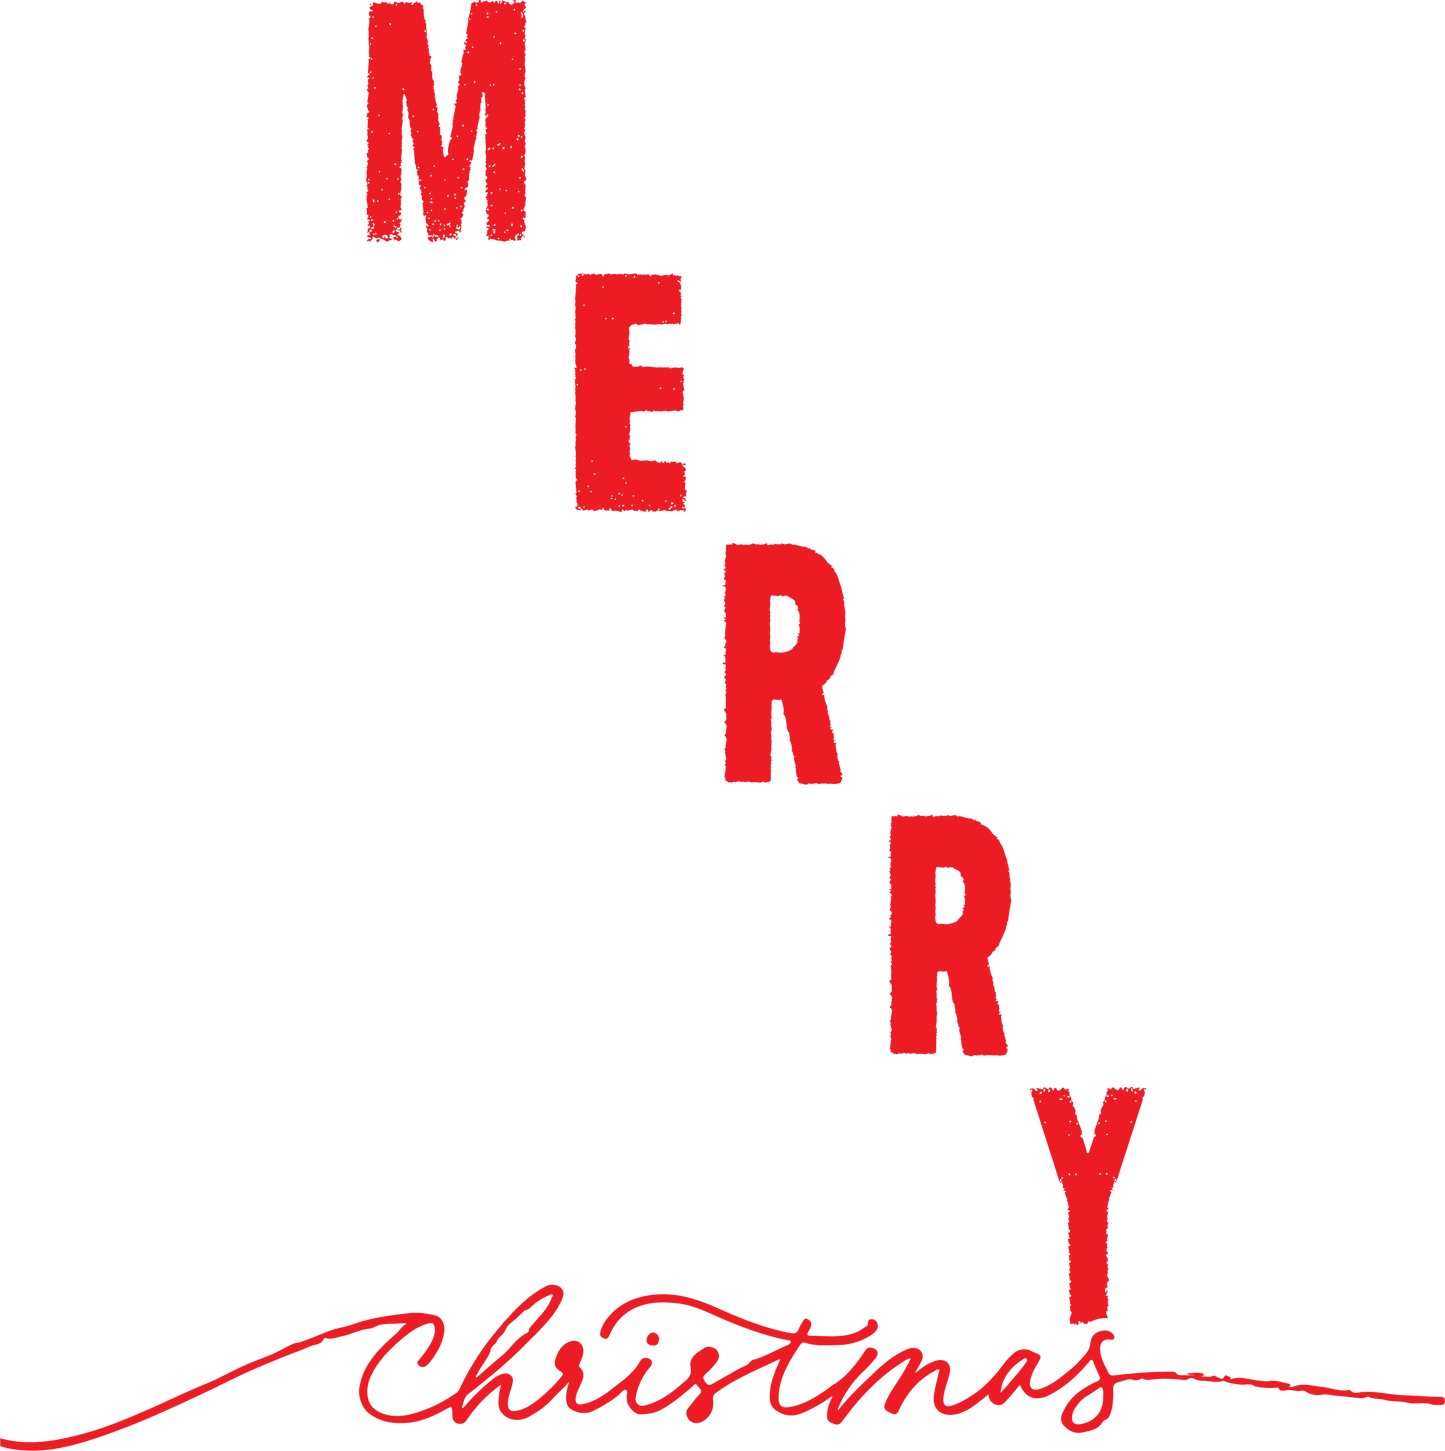 Merry, Merry, Merry, Merry, Merry  Christmans